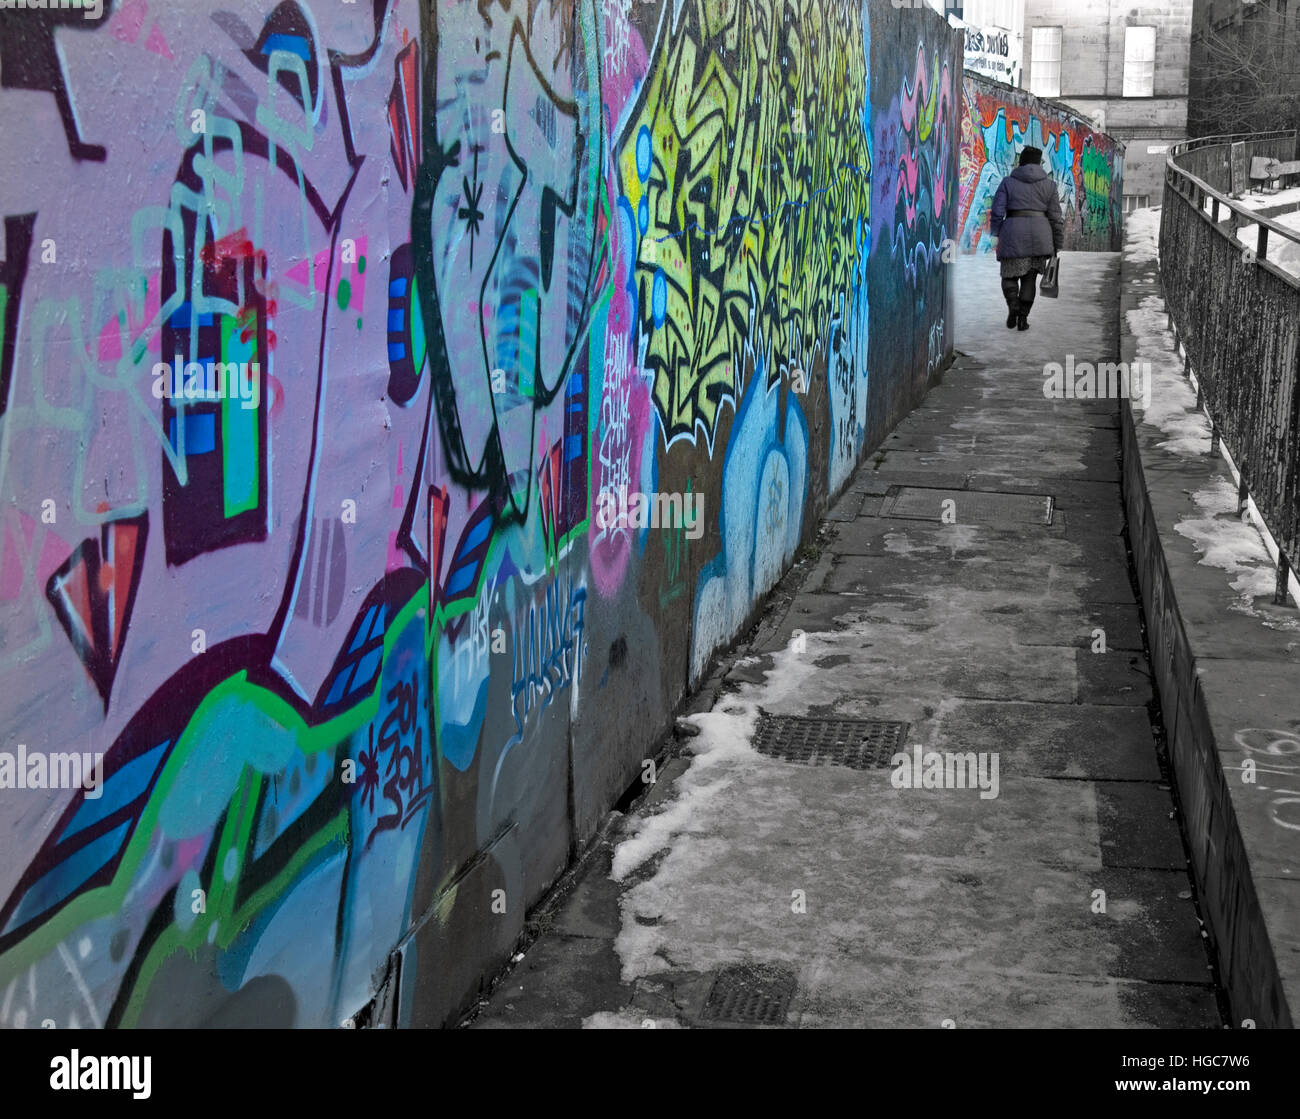 Vieille femme marchant dans un chemin enneigé avec graffiti, la Ville d'Edinburgh, Ecosse Banque D'Images